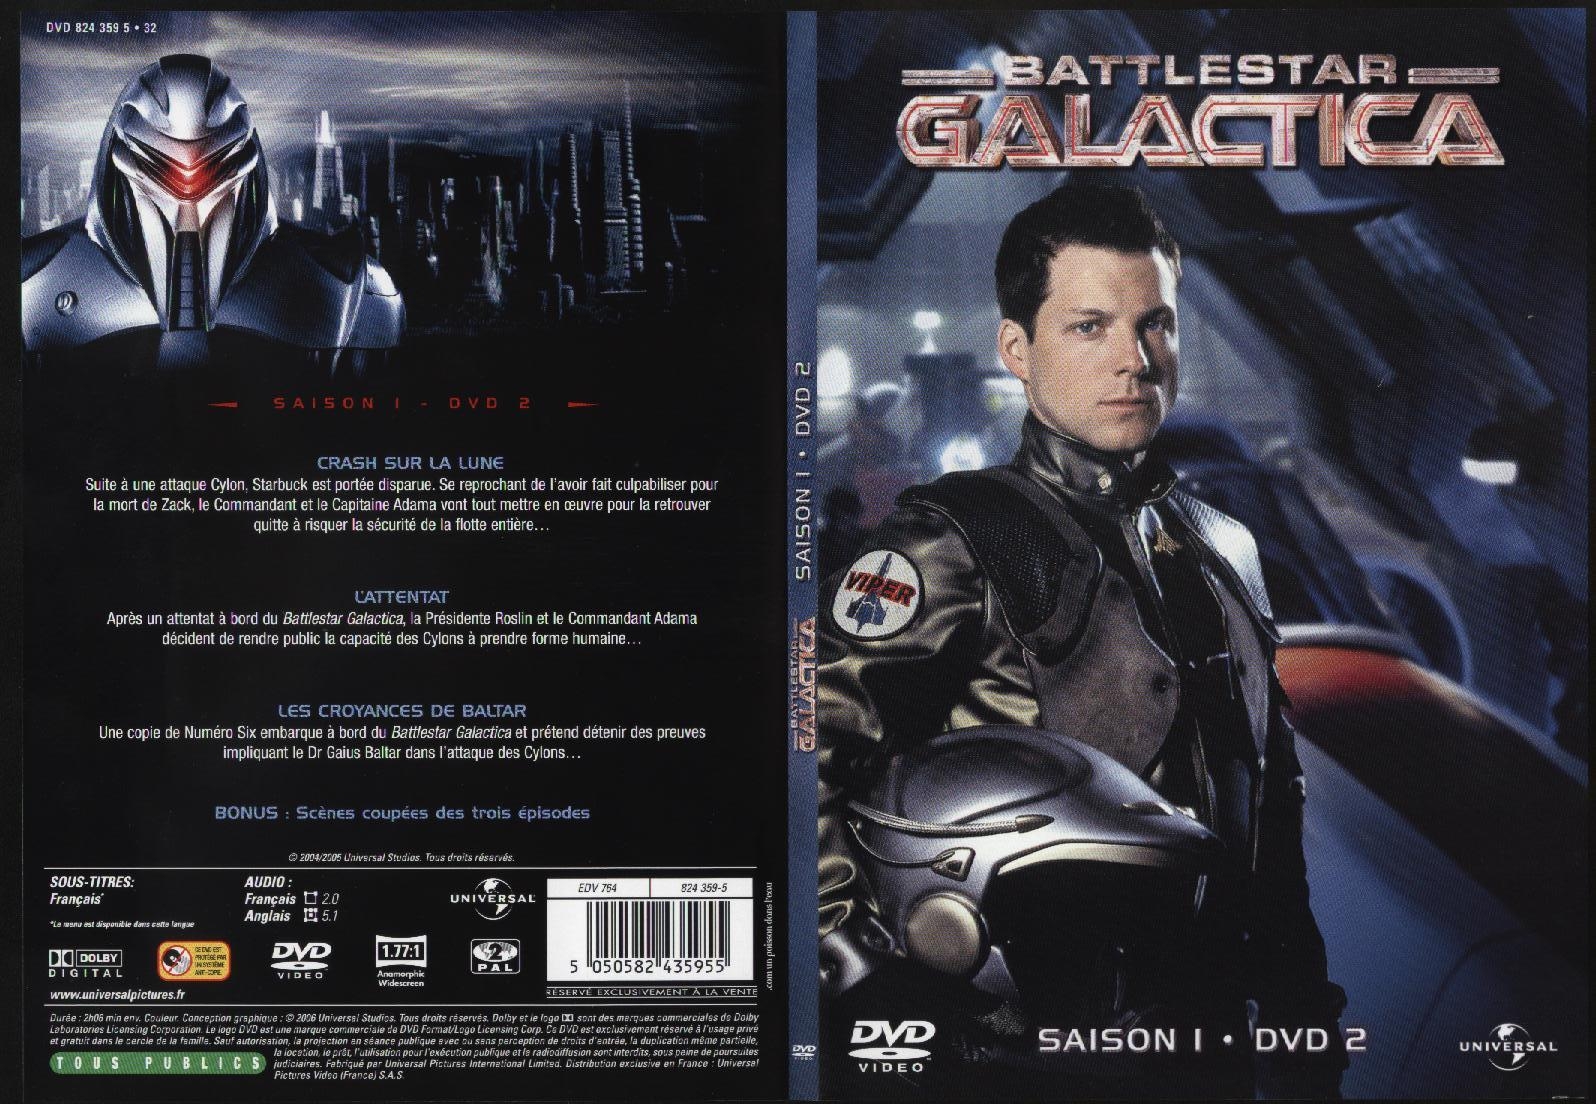 Jaquette DVD Battlestar Galactica saison 1 dvd 2